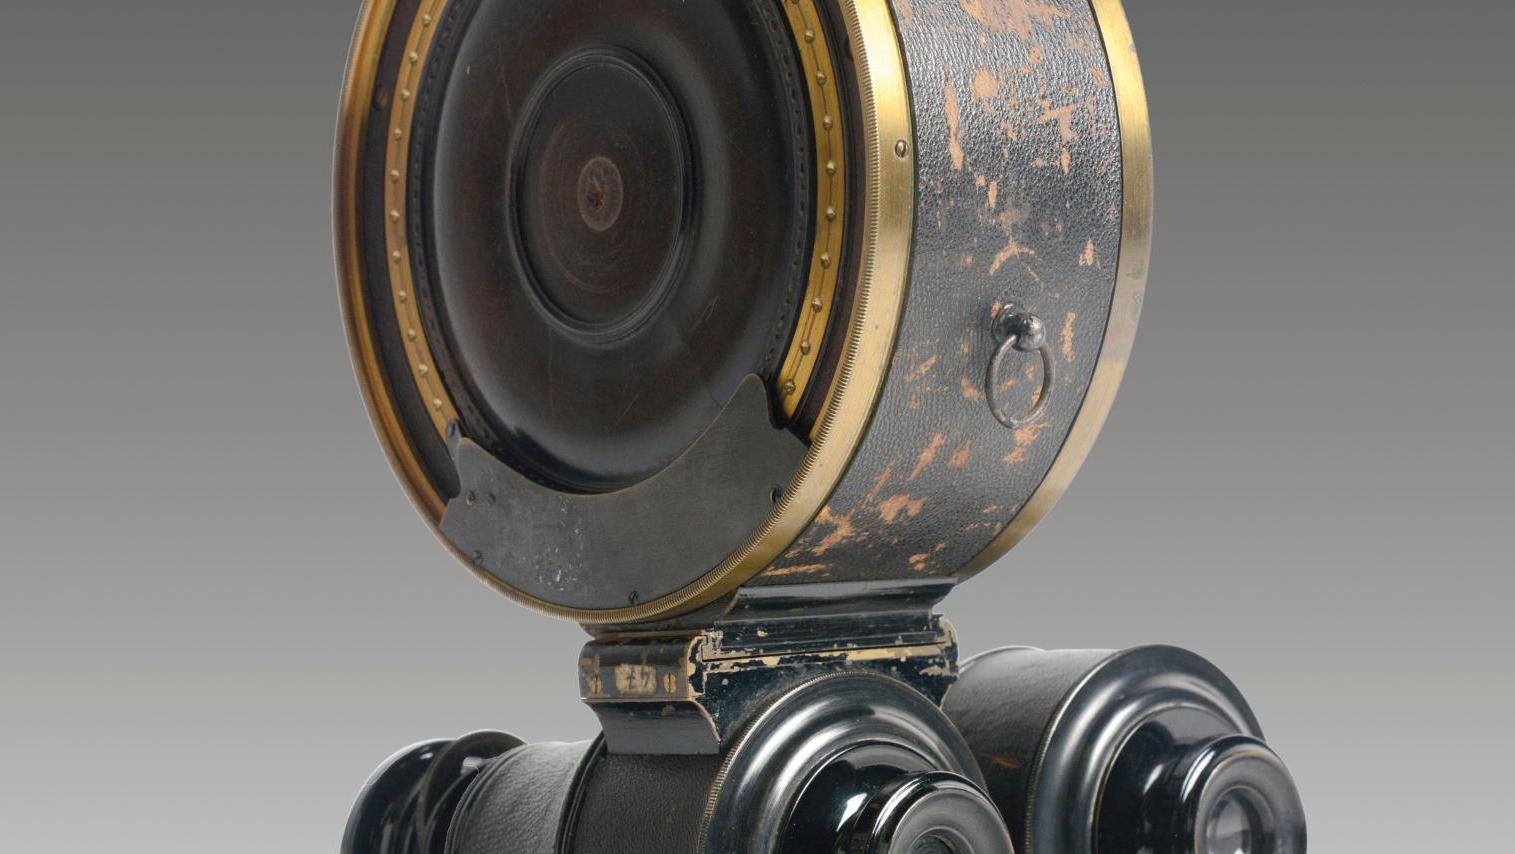 Geymet et Alker constructeurs Paris, jumelle photographique de Nicour, brevetée S.G.D.G.,... Ceci est un appareil photographique